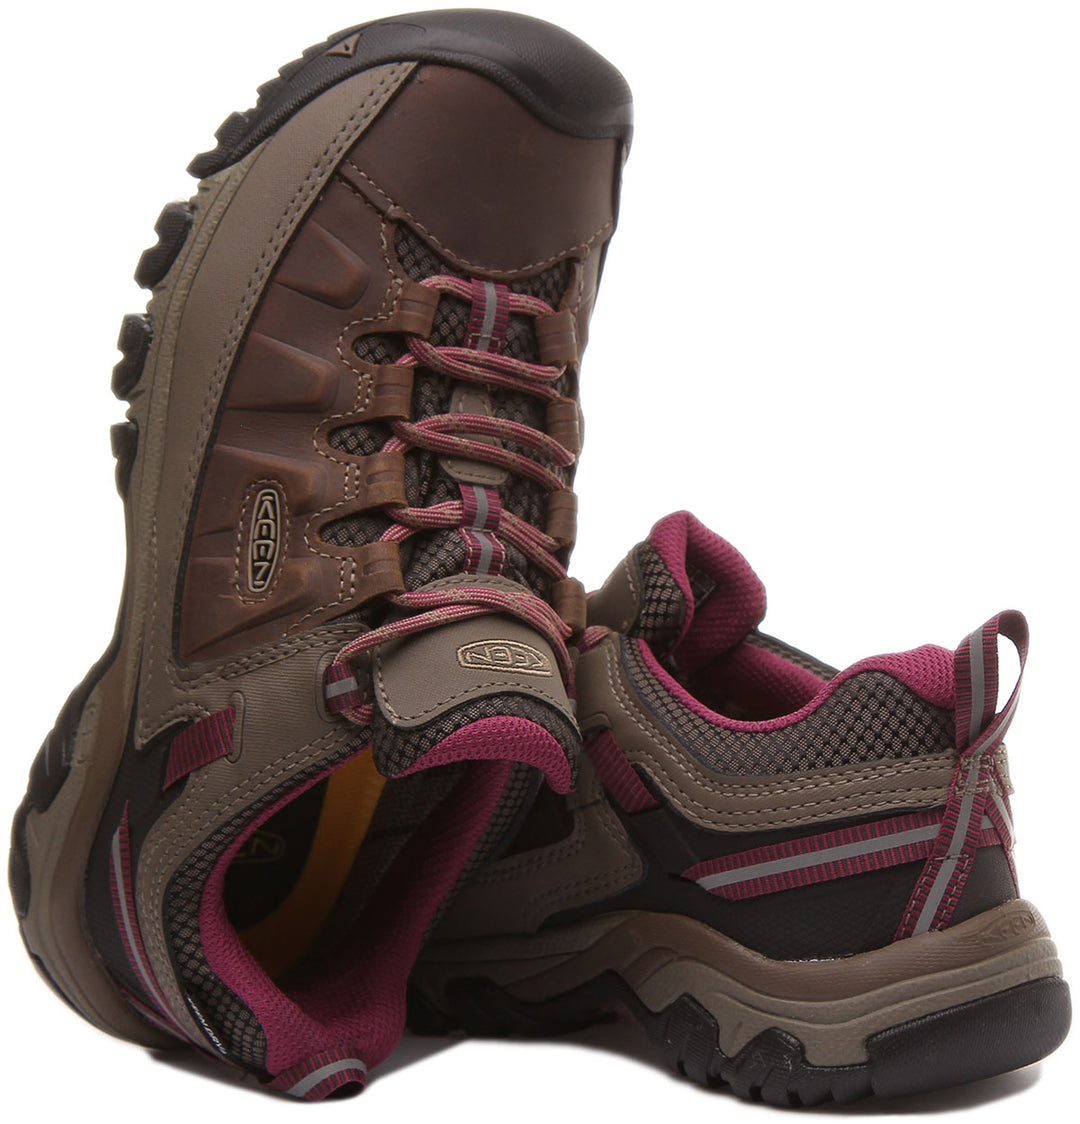 Keen Targhee 3 Chaussures de randonnée en cuir imperméable à lacets pour femmes en marron